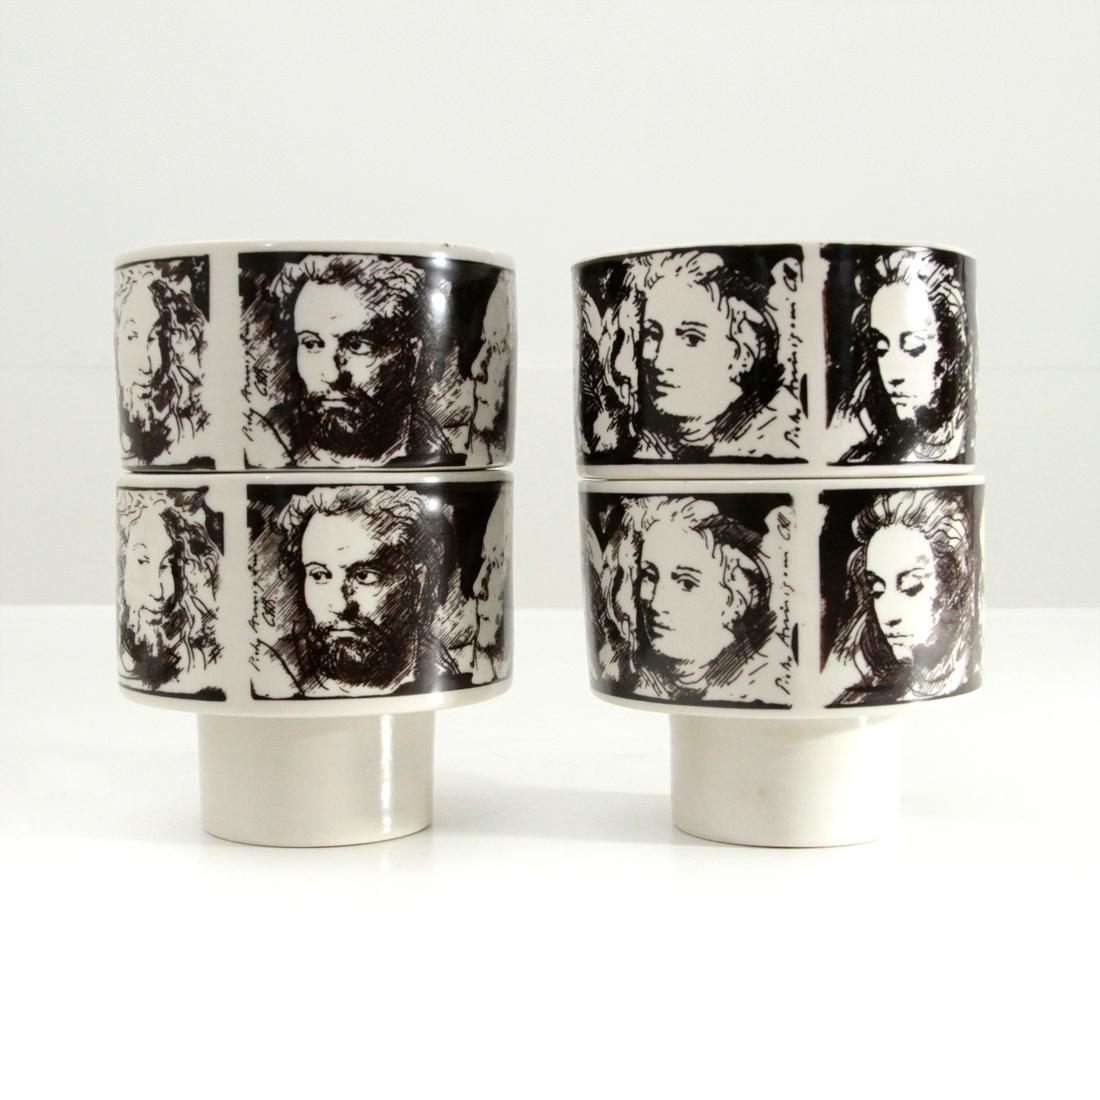 4 Midcentury Porcelain Cups ‘Uomini Illustri’ by Pietro Annigoni for Porcellane  1